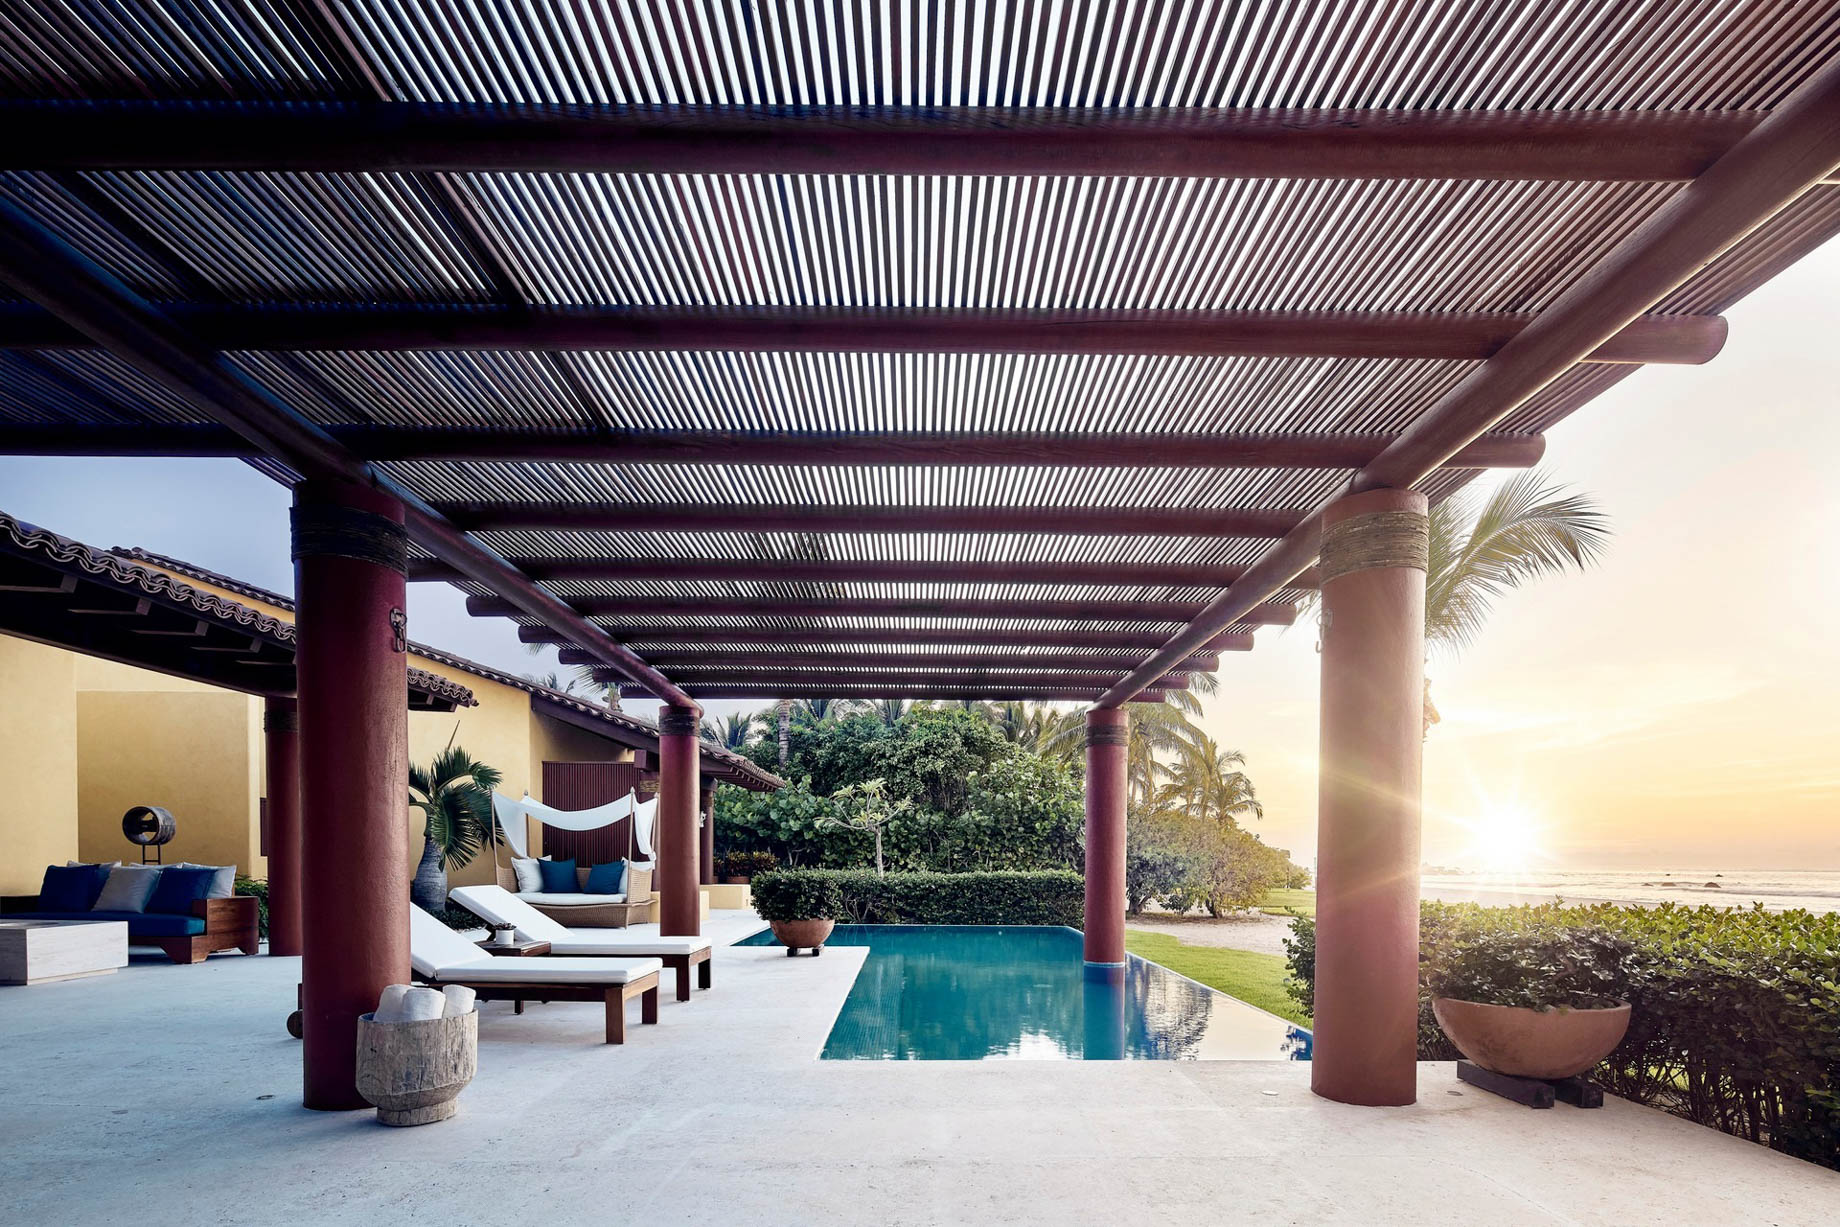 Four Seasons Resort Punta Mita - Nayarit, Mexico - Resort Villa Pool Deck Sunset